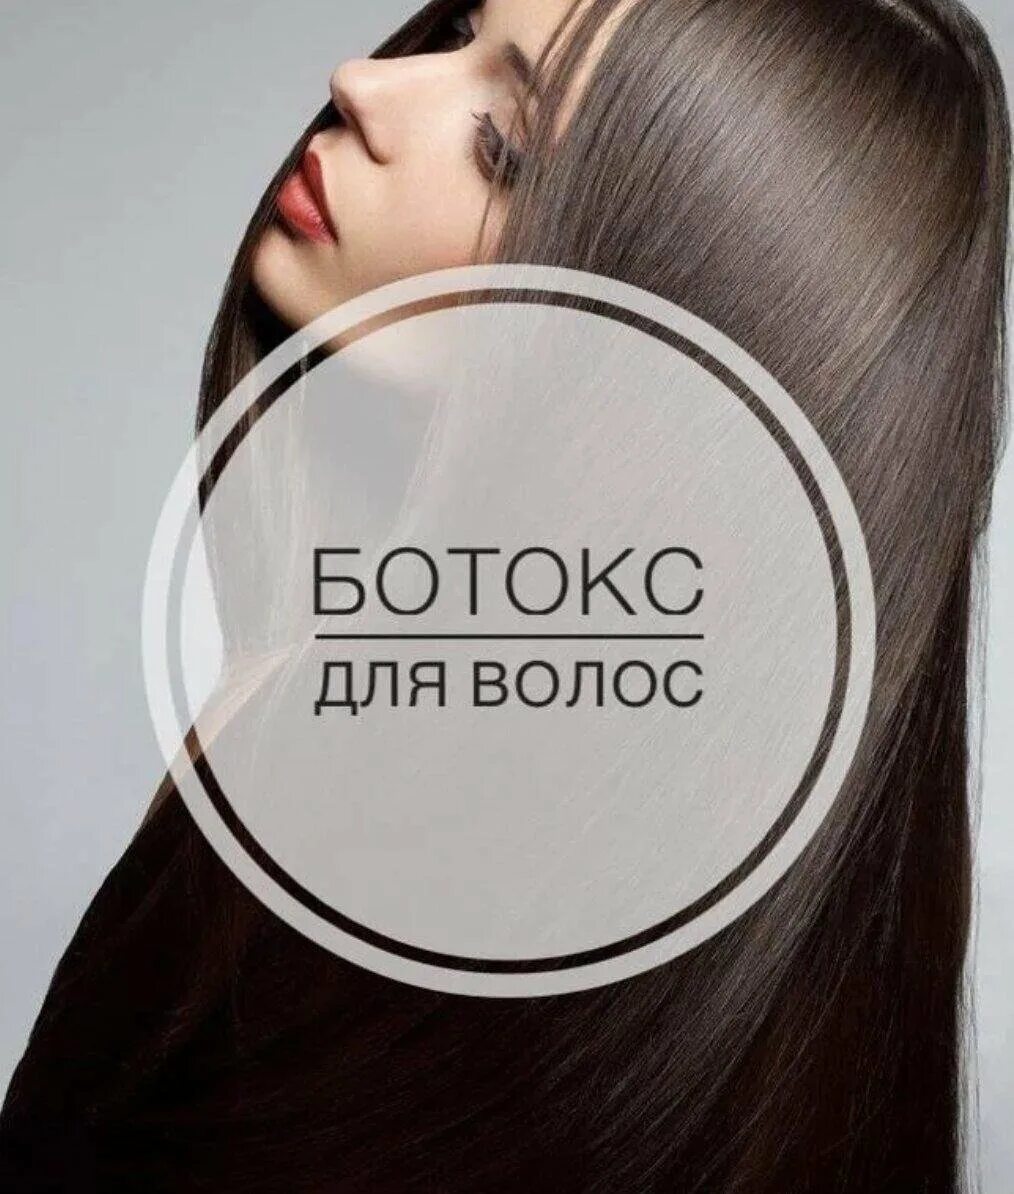 Мастер кератин ботокс. Ботокс для волос. Битекс для волос. Волосы ботокс волос. Ботокс для волос реклама.